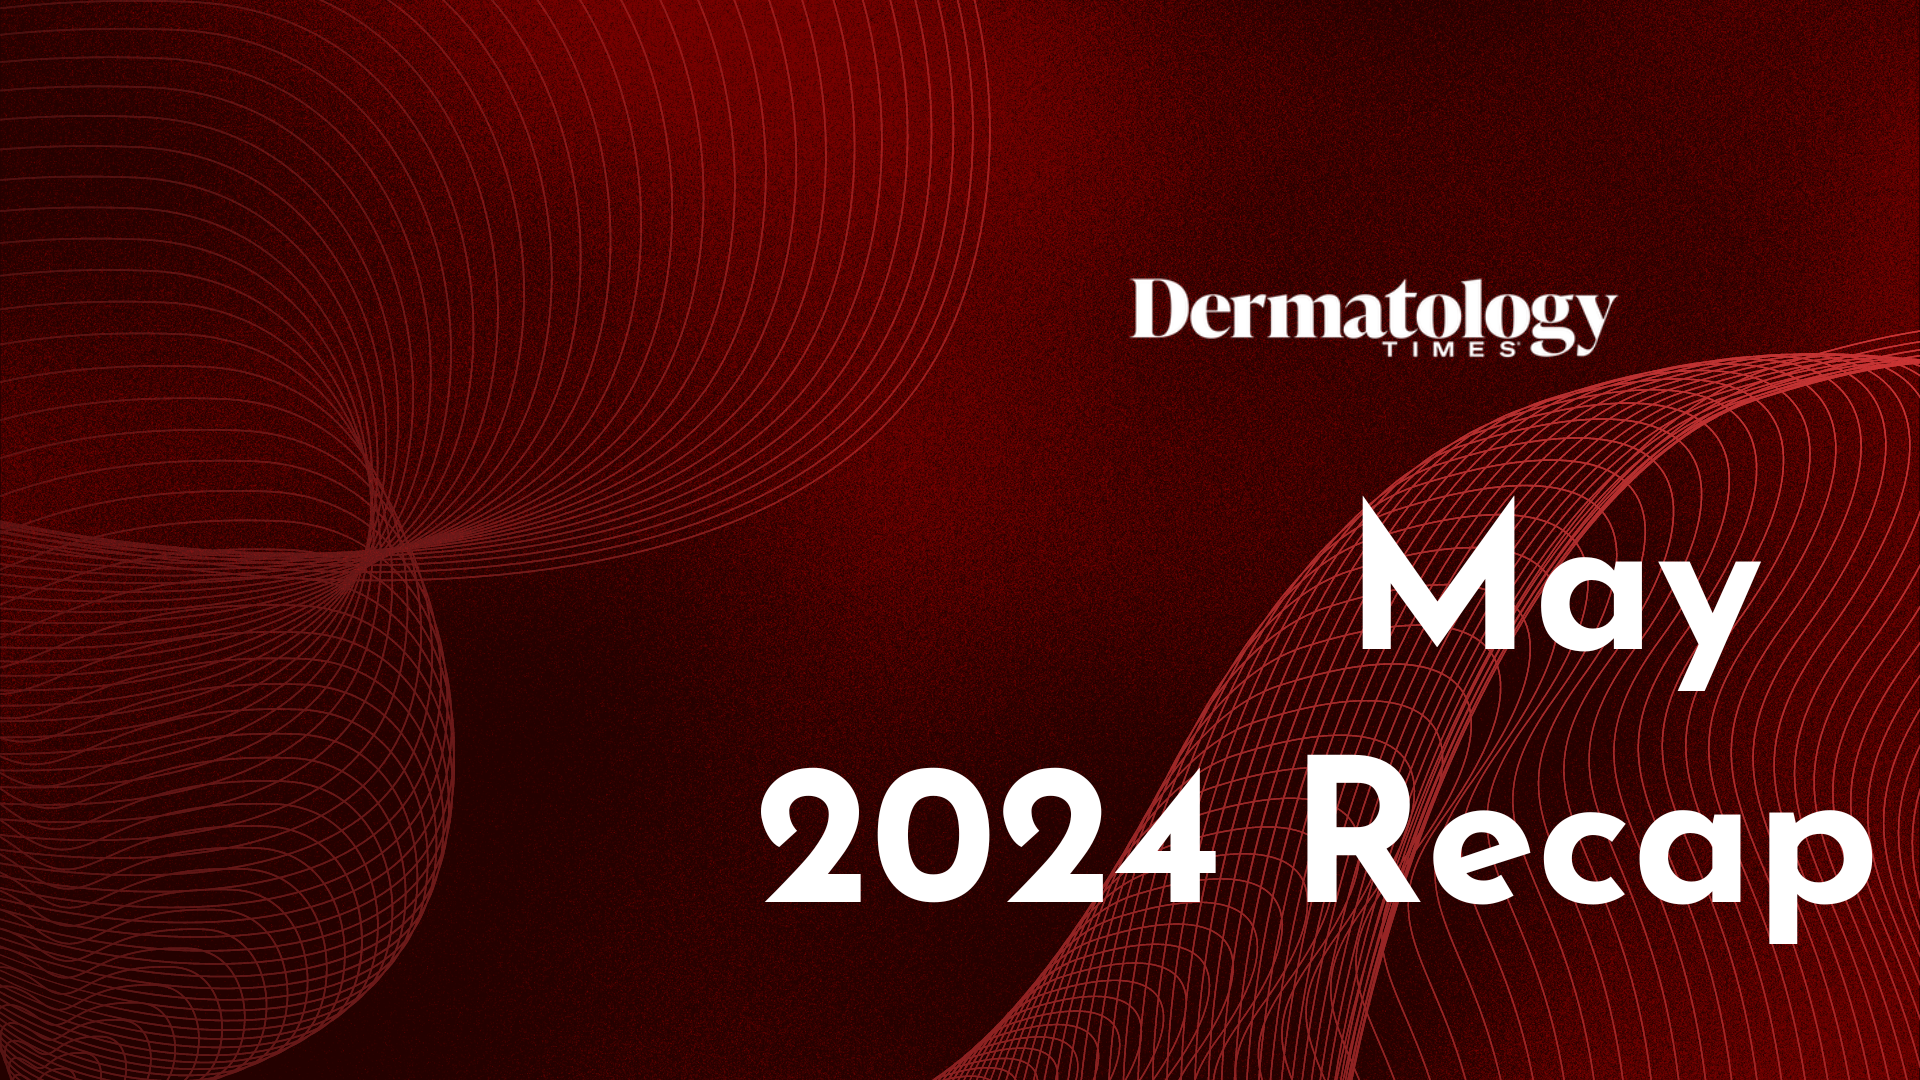 Dermatology Times May 2024 Recap